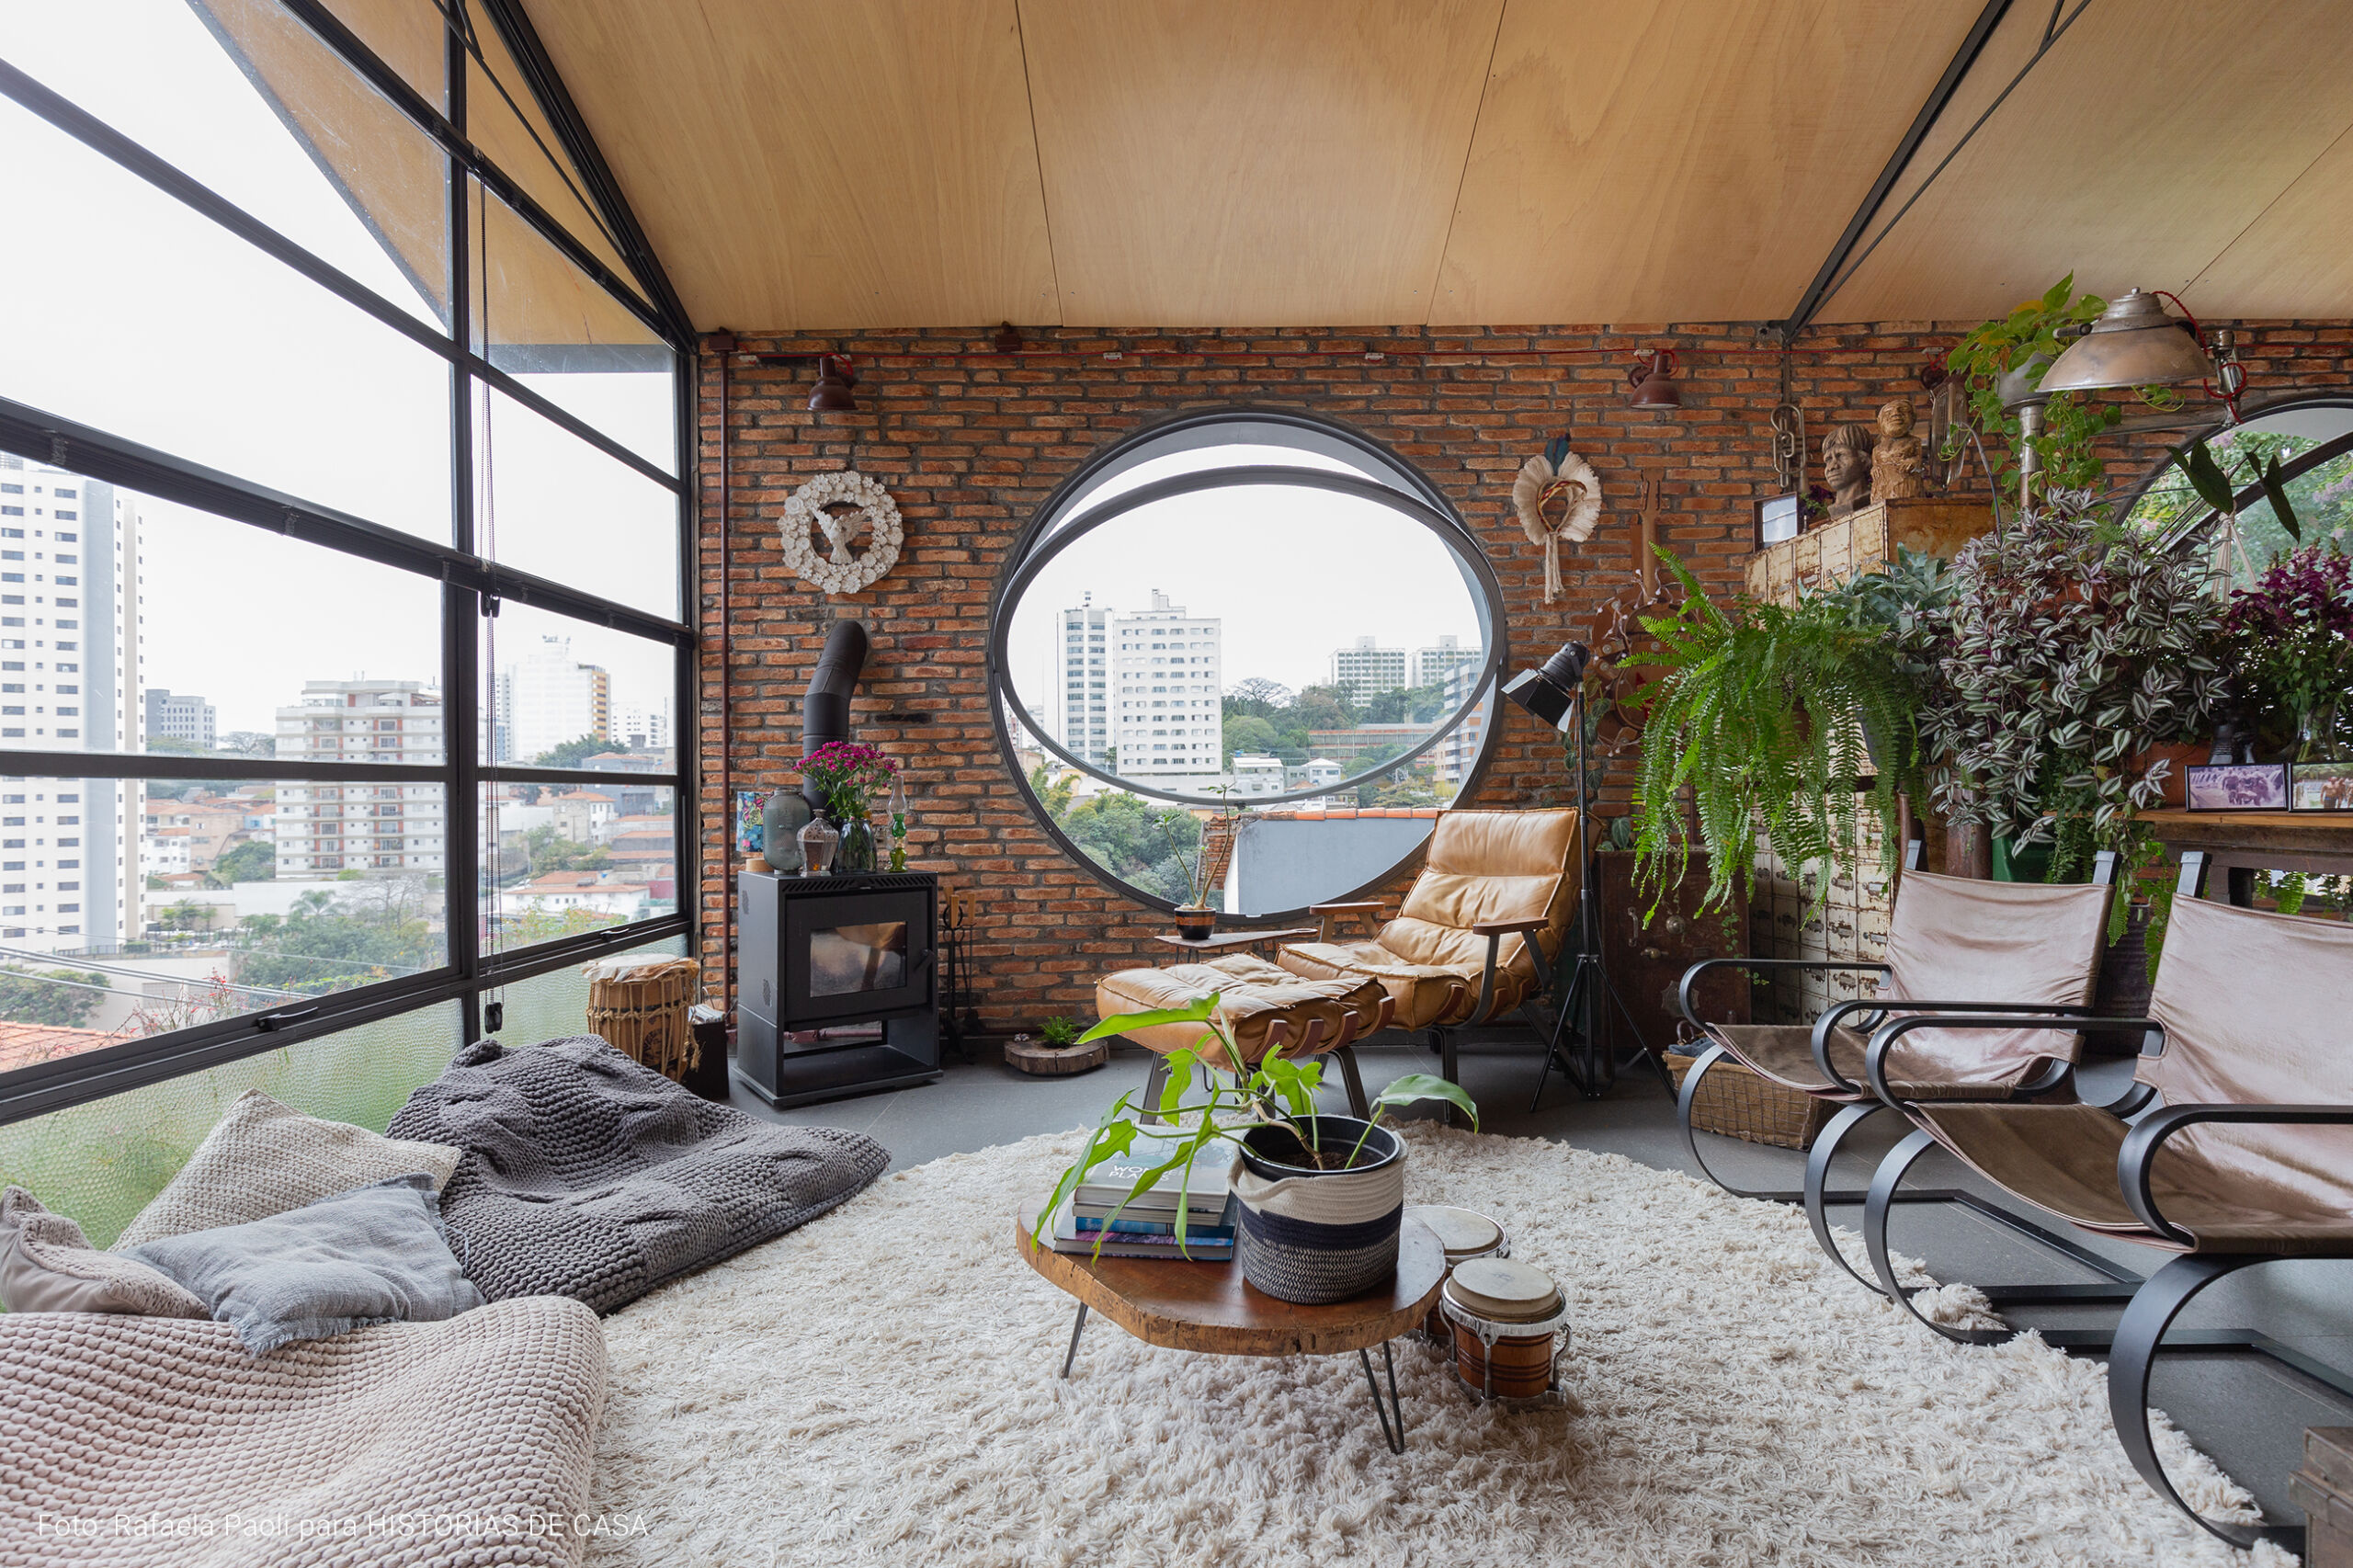 Arquitetura com estilo industrial, casa com tijolinhos e plantas, janelas redondas